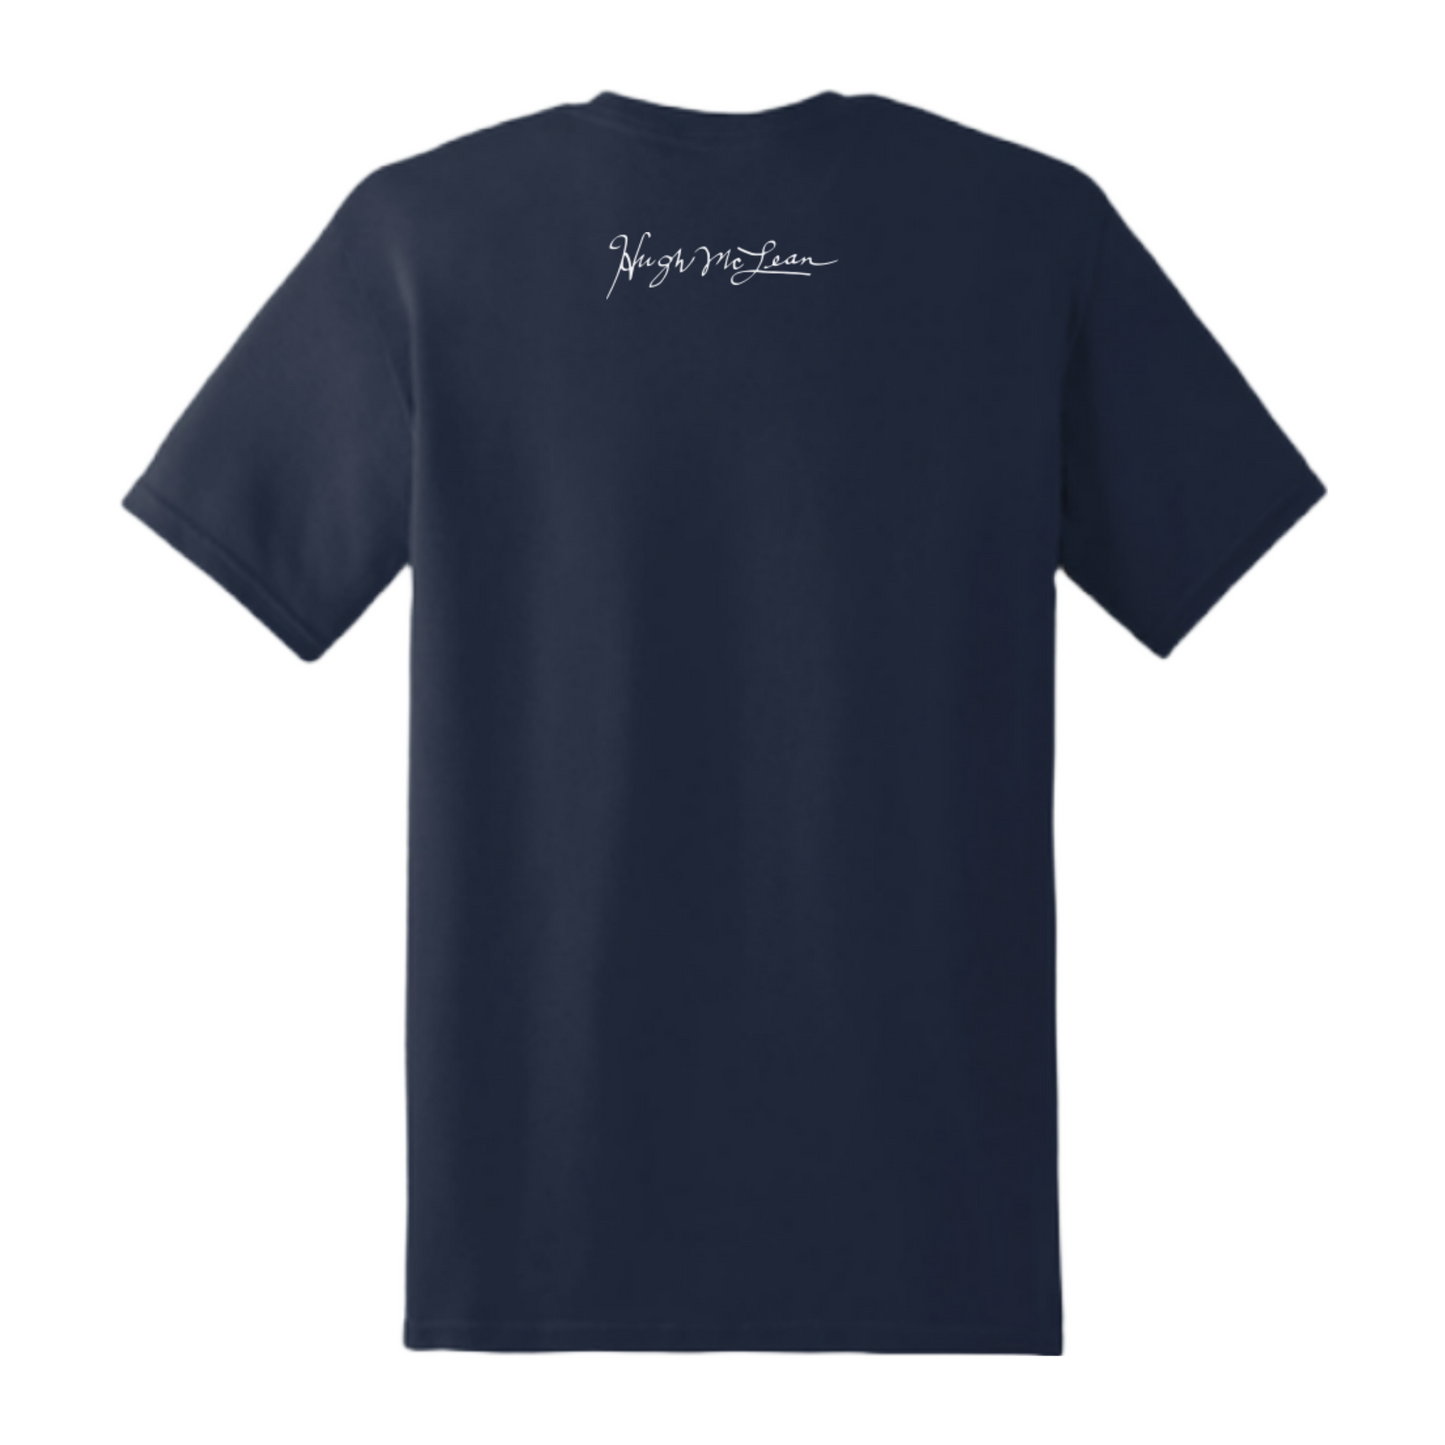 Hugh McLean HMAC Soft & Smooth T-Shirt